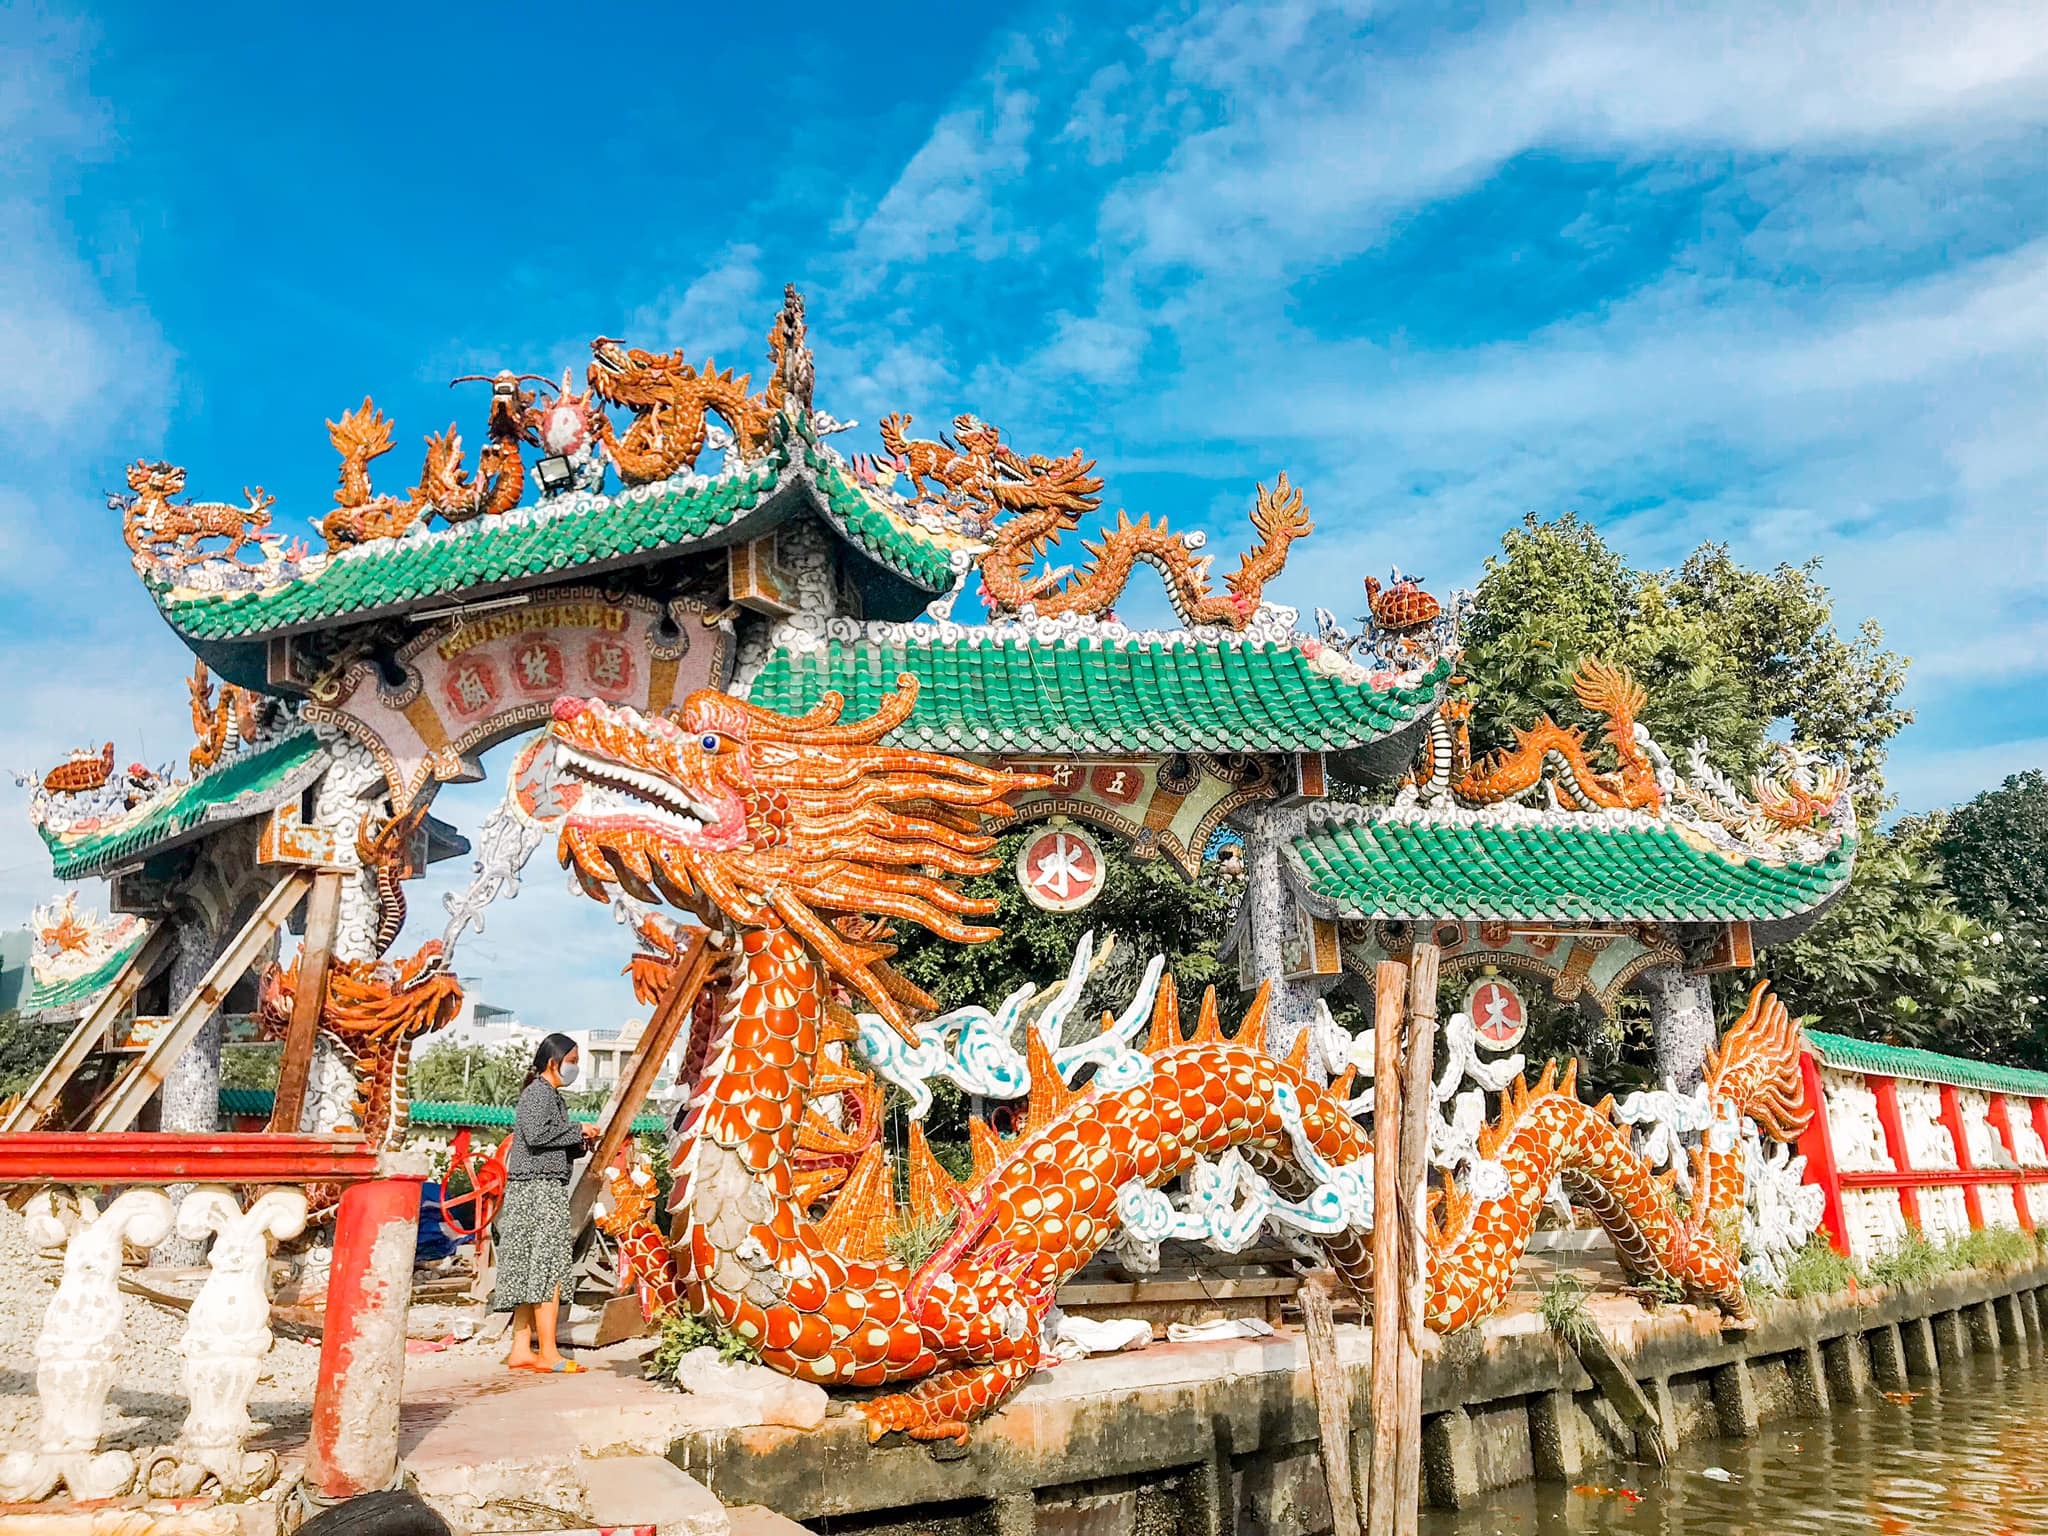 Ngôi miếu 300 năm "lênh đênh" giữa sông Sài Gòn, khách xếp hàng chờ đò đi tìm lịch sử "kì bí" - 4